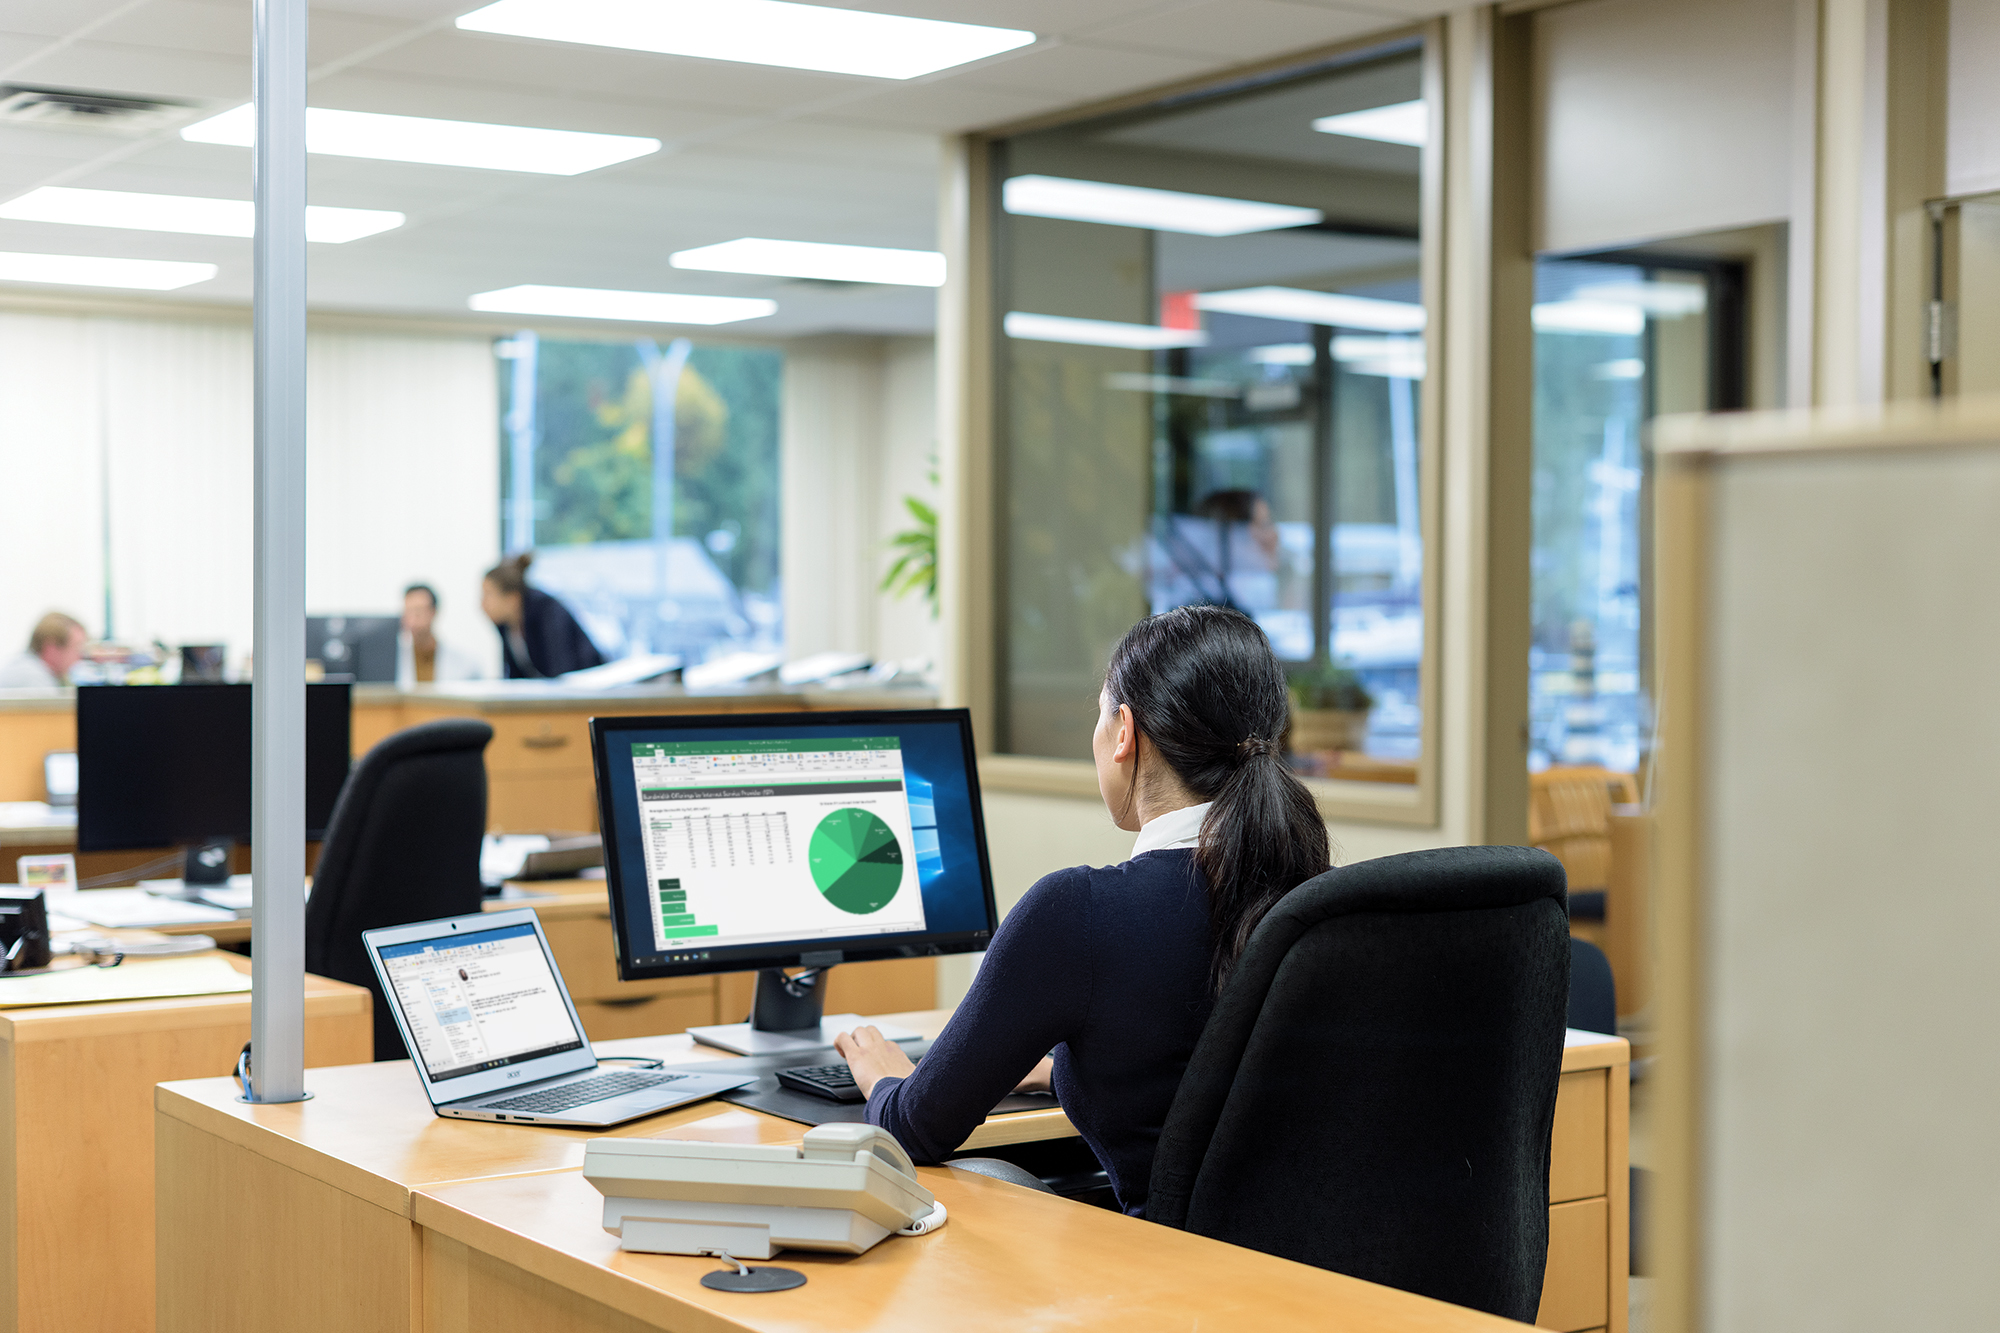 Un trabajador de oficina ve un gráfico y tablas en una pantalla mientras otros trabajadores se encuentran en segundo plano.